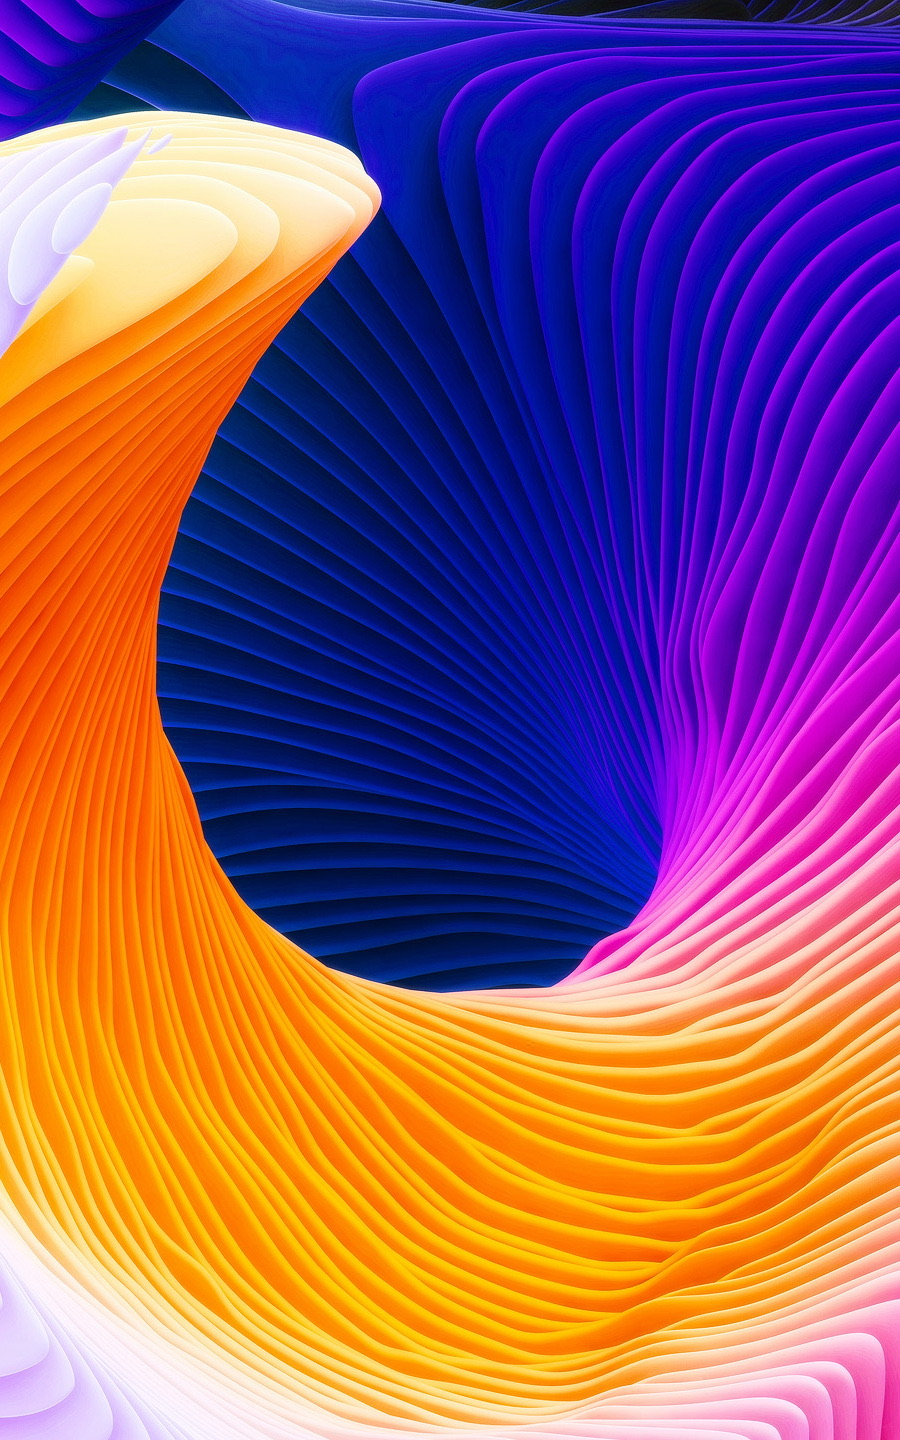 4k fonds d'écran pour iphone 7,orange,bleu,violet,jaune,lumière